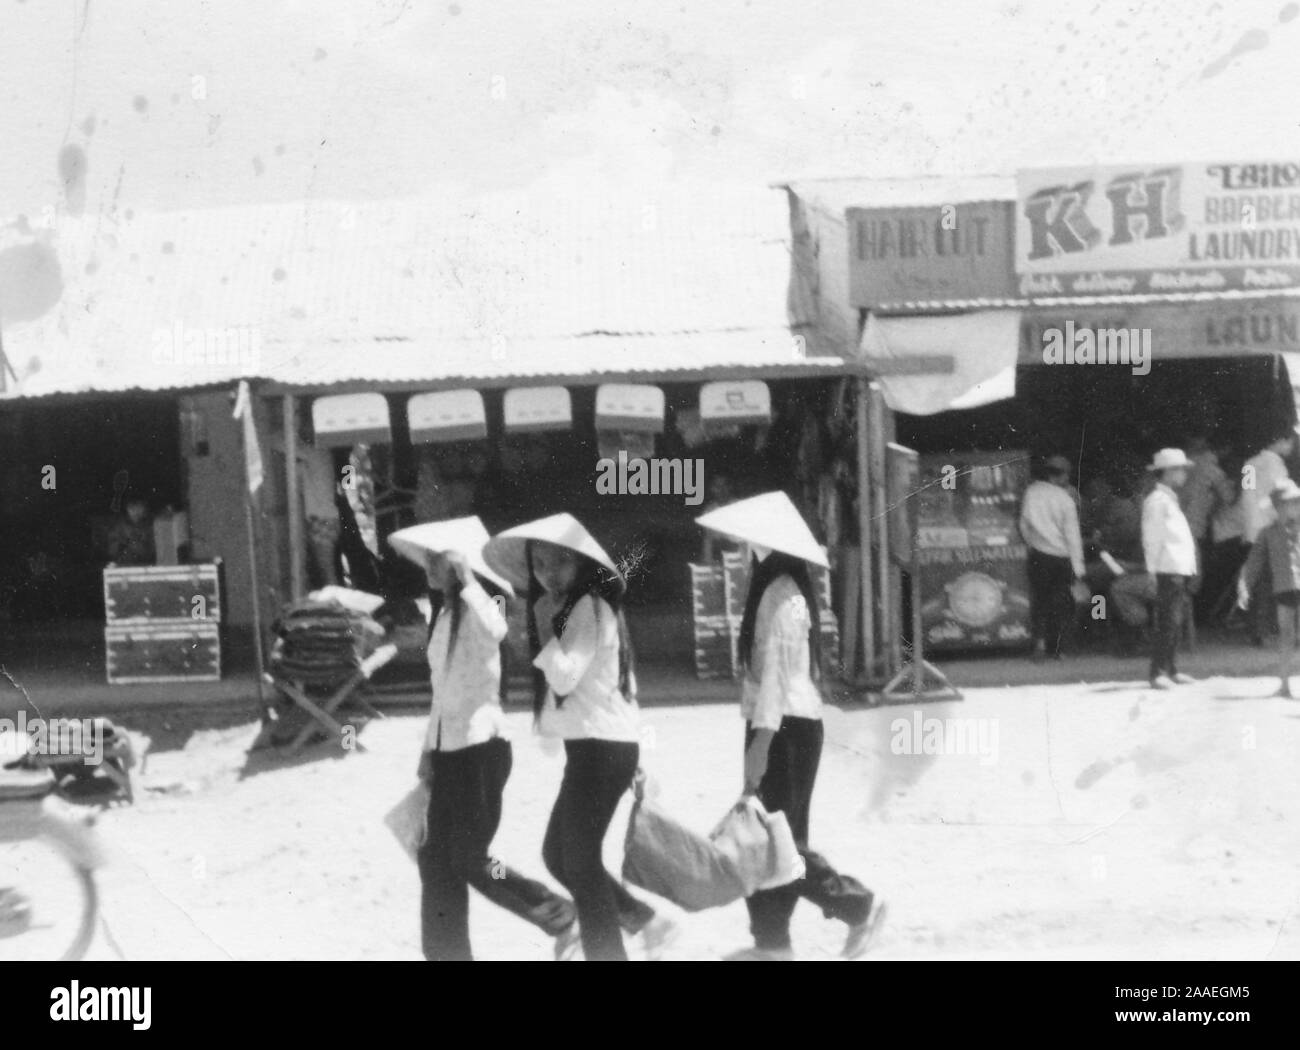 Trois jeunes filles, portant des chemises, des pantalons, et non conique la chapeaux, marcher ensemble à travers une rue commerçante la réalisation d'un objet lourd, avec la fille du milieu en tournant son visage avec curiosité vers l'appareil photo, un China, Vietnam, 1966. () Banque D'Images